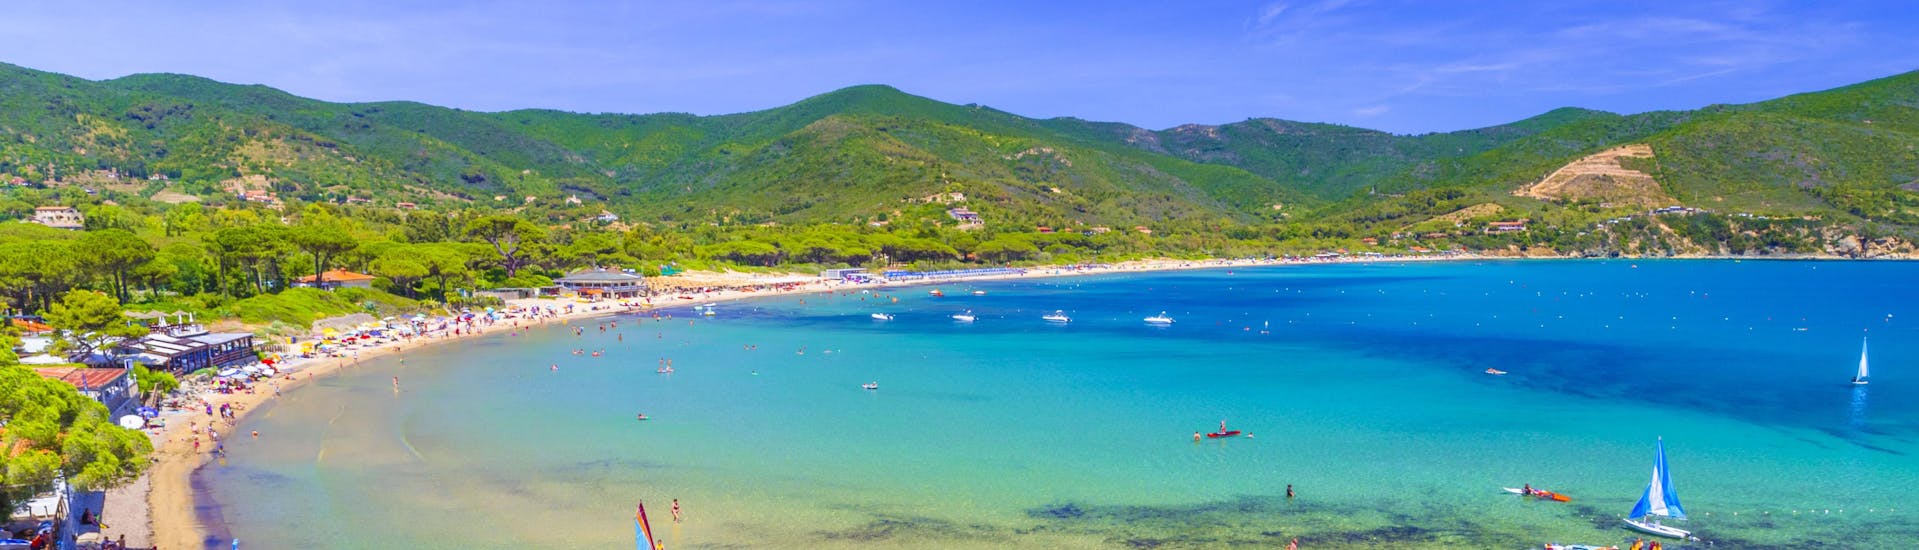 Blick auf einen Strand in Lacona, wo viele Bootstouren auf der Insel Elba beginnen.